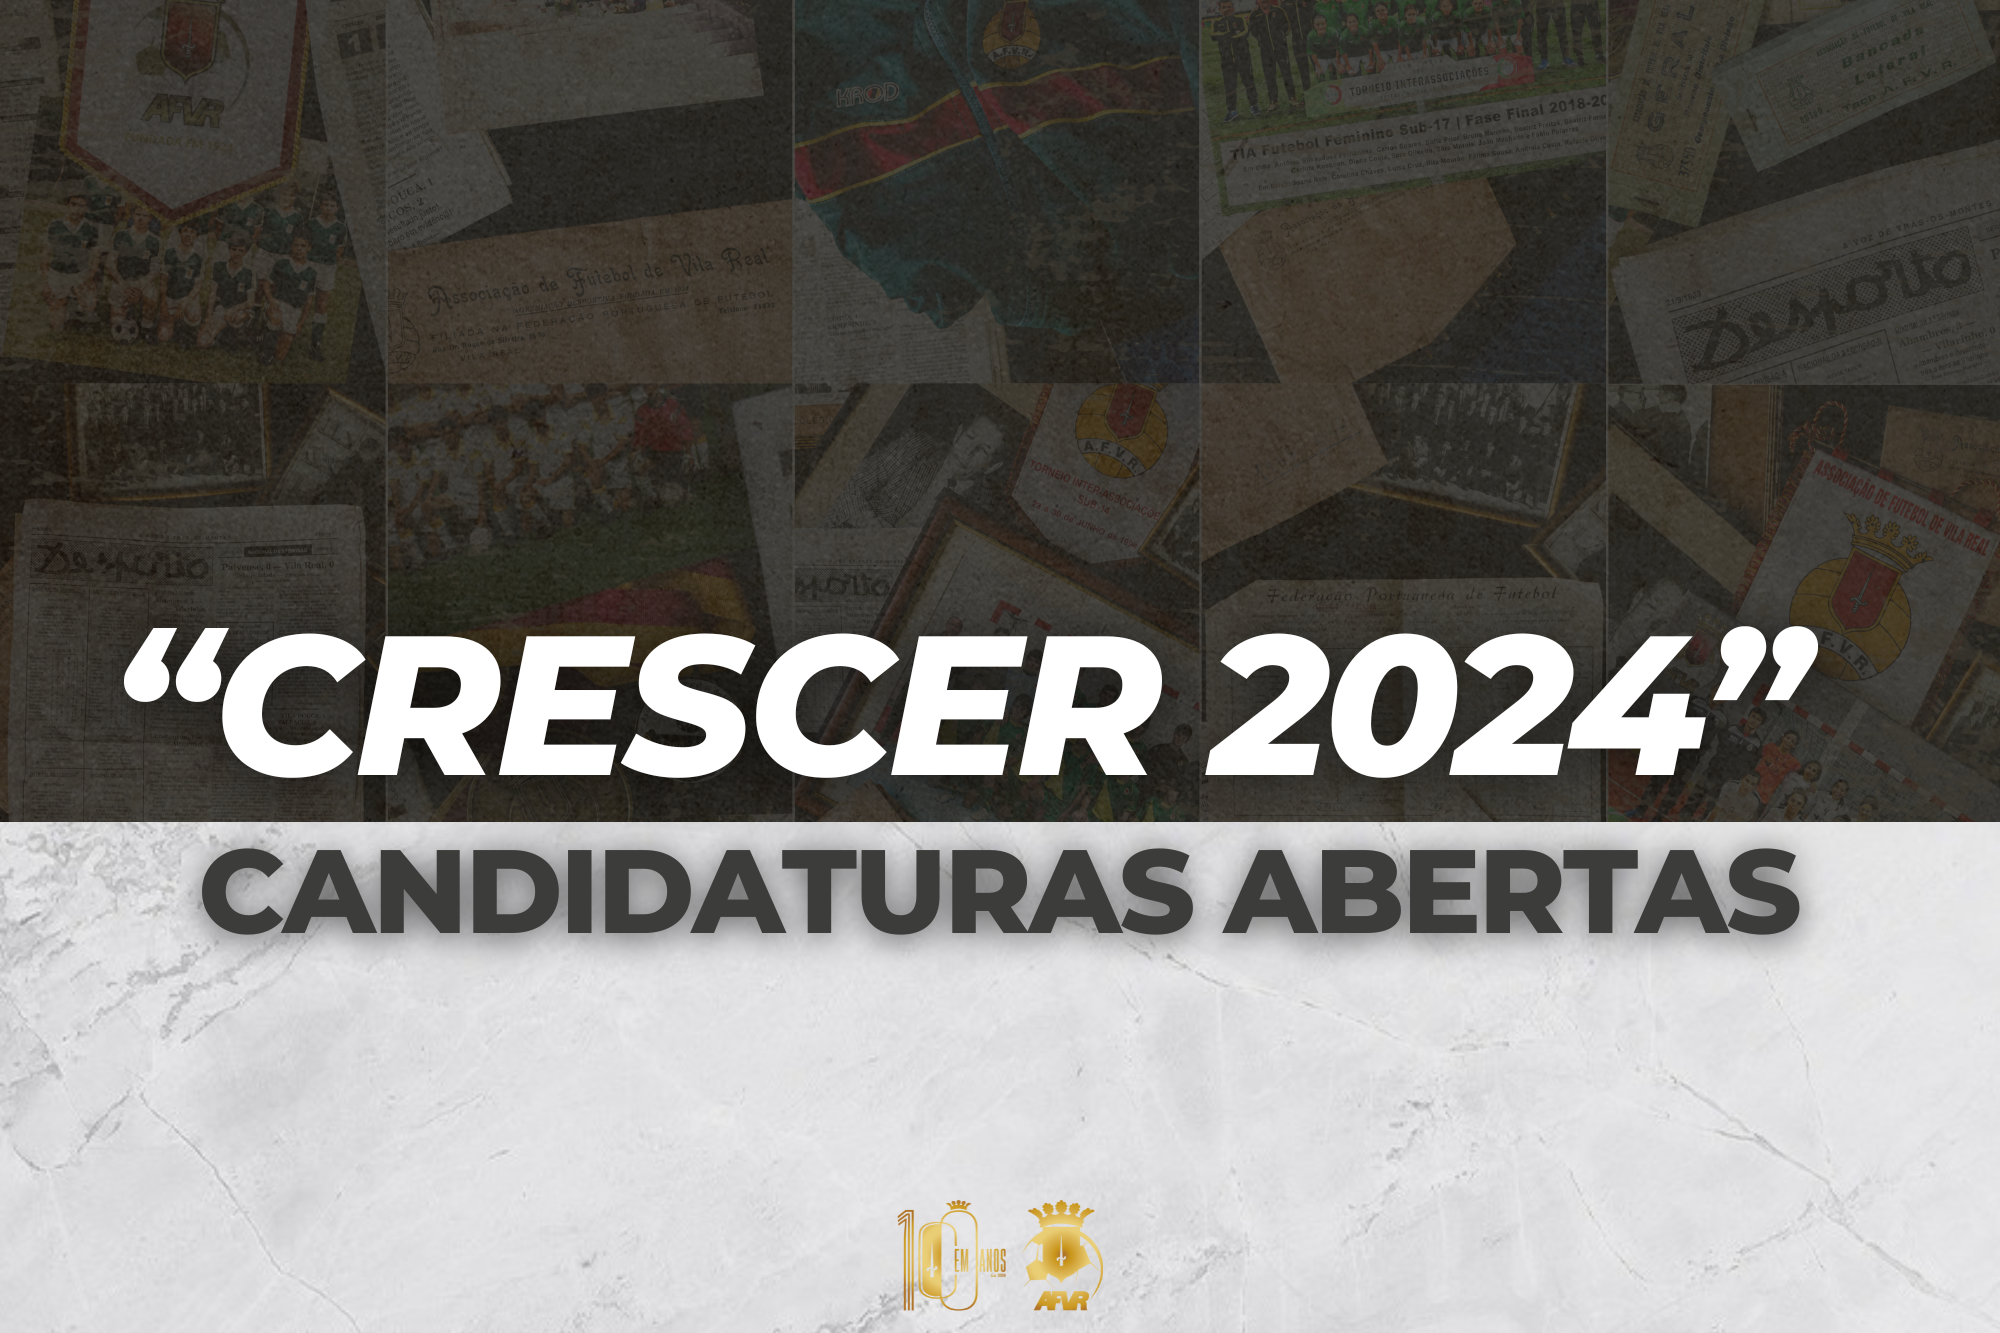 “CRESCER 2024” Candidaturas Abertas